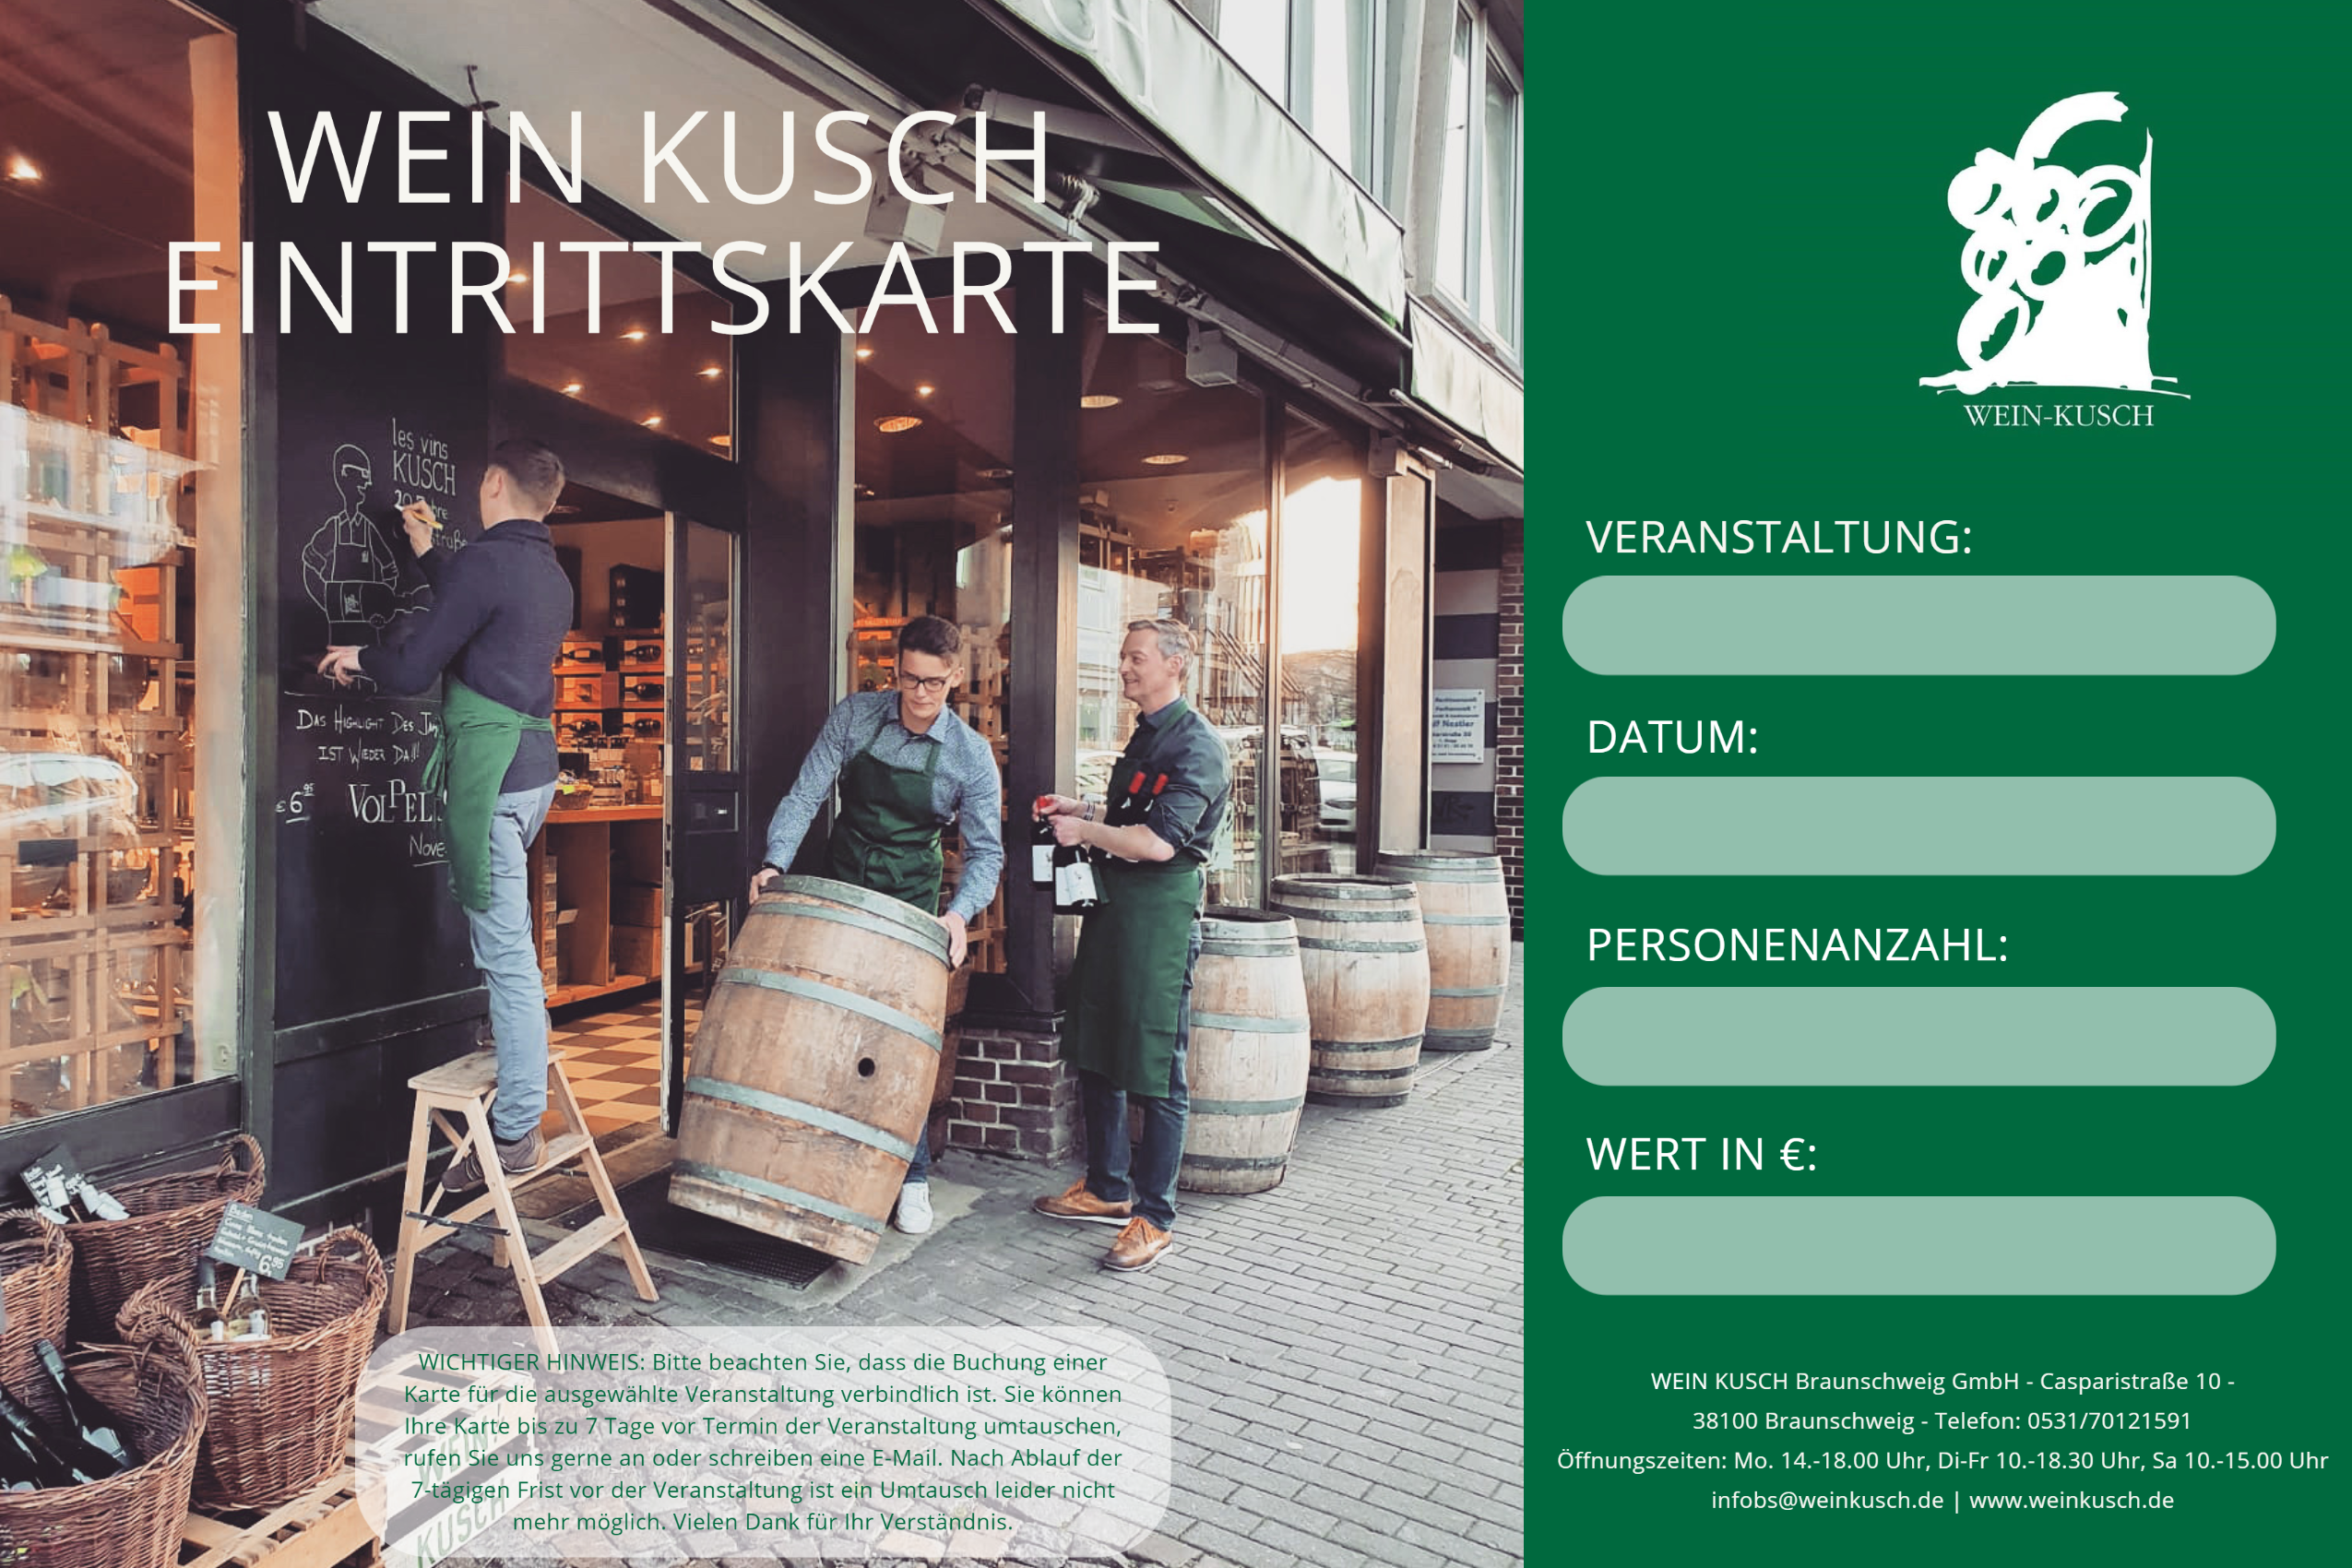 2022.09.03 - Gin-Tasting in Braunschweig 19.00 Uhr